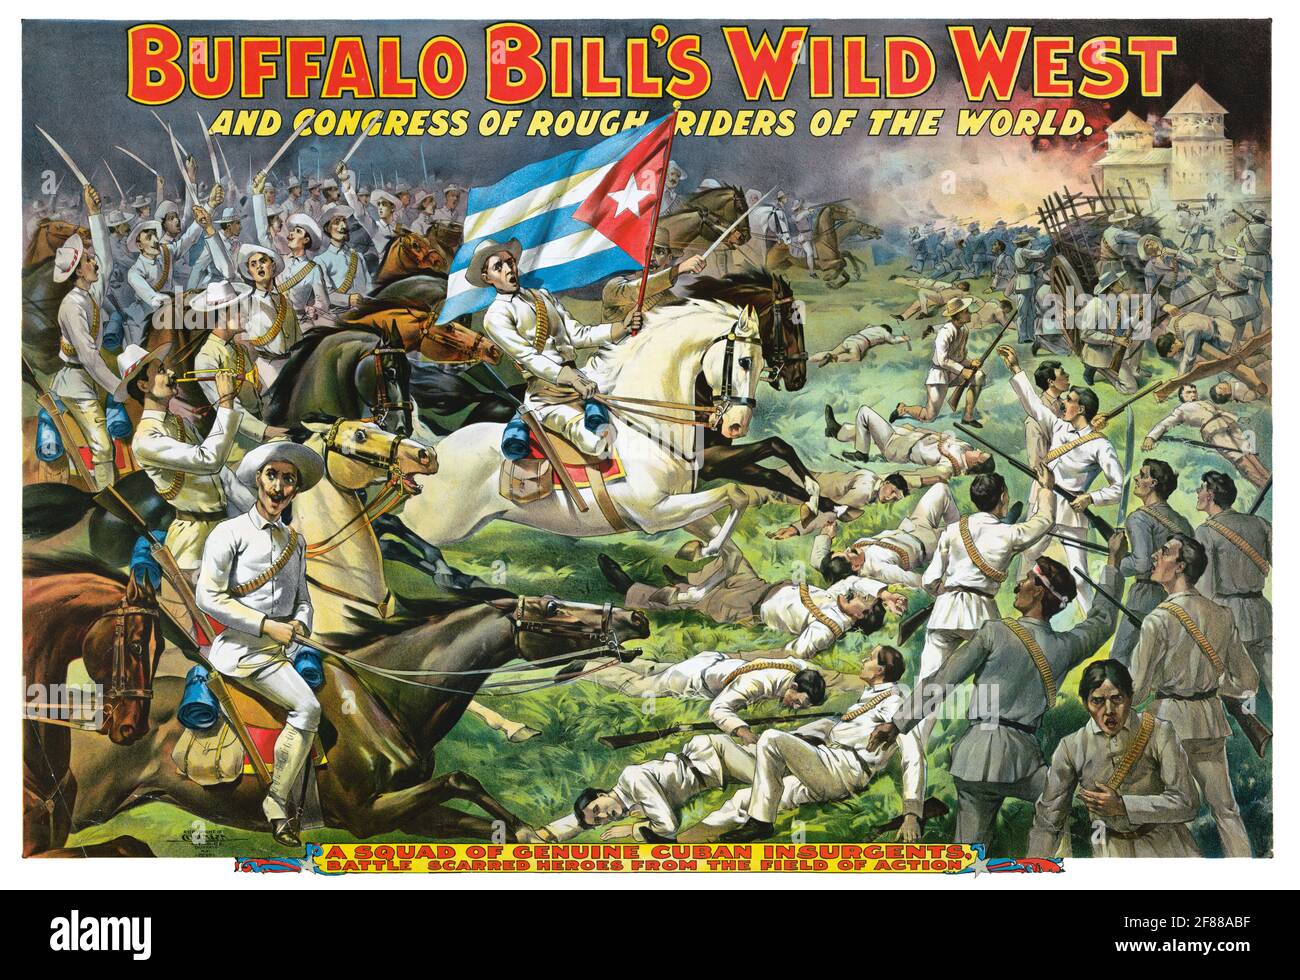 Buffalo Bills Wilder Westen und Kongress der Rough Riders of the World – kubanische Aufständische. 1890er. Stockfoto